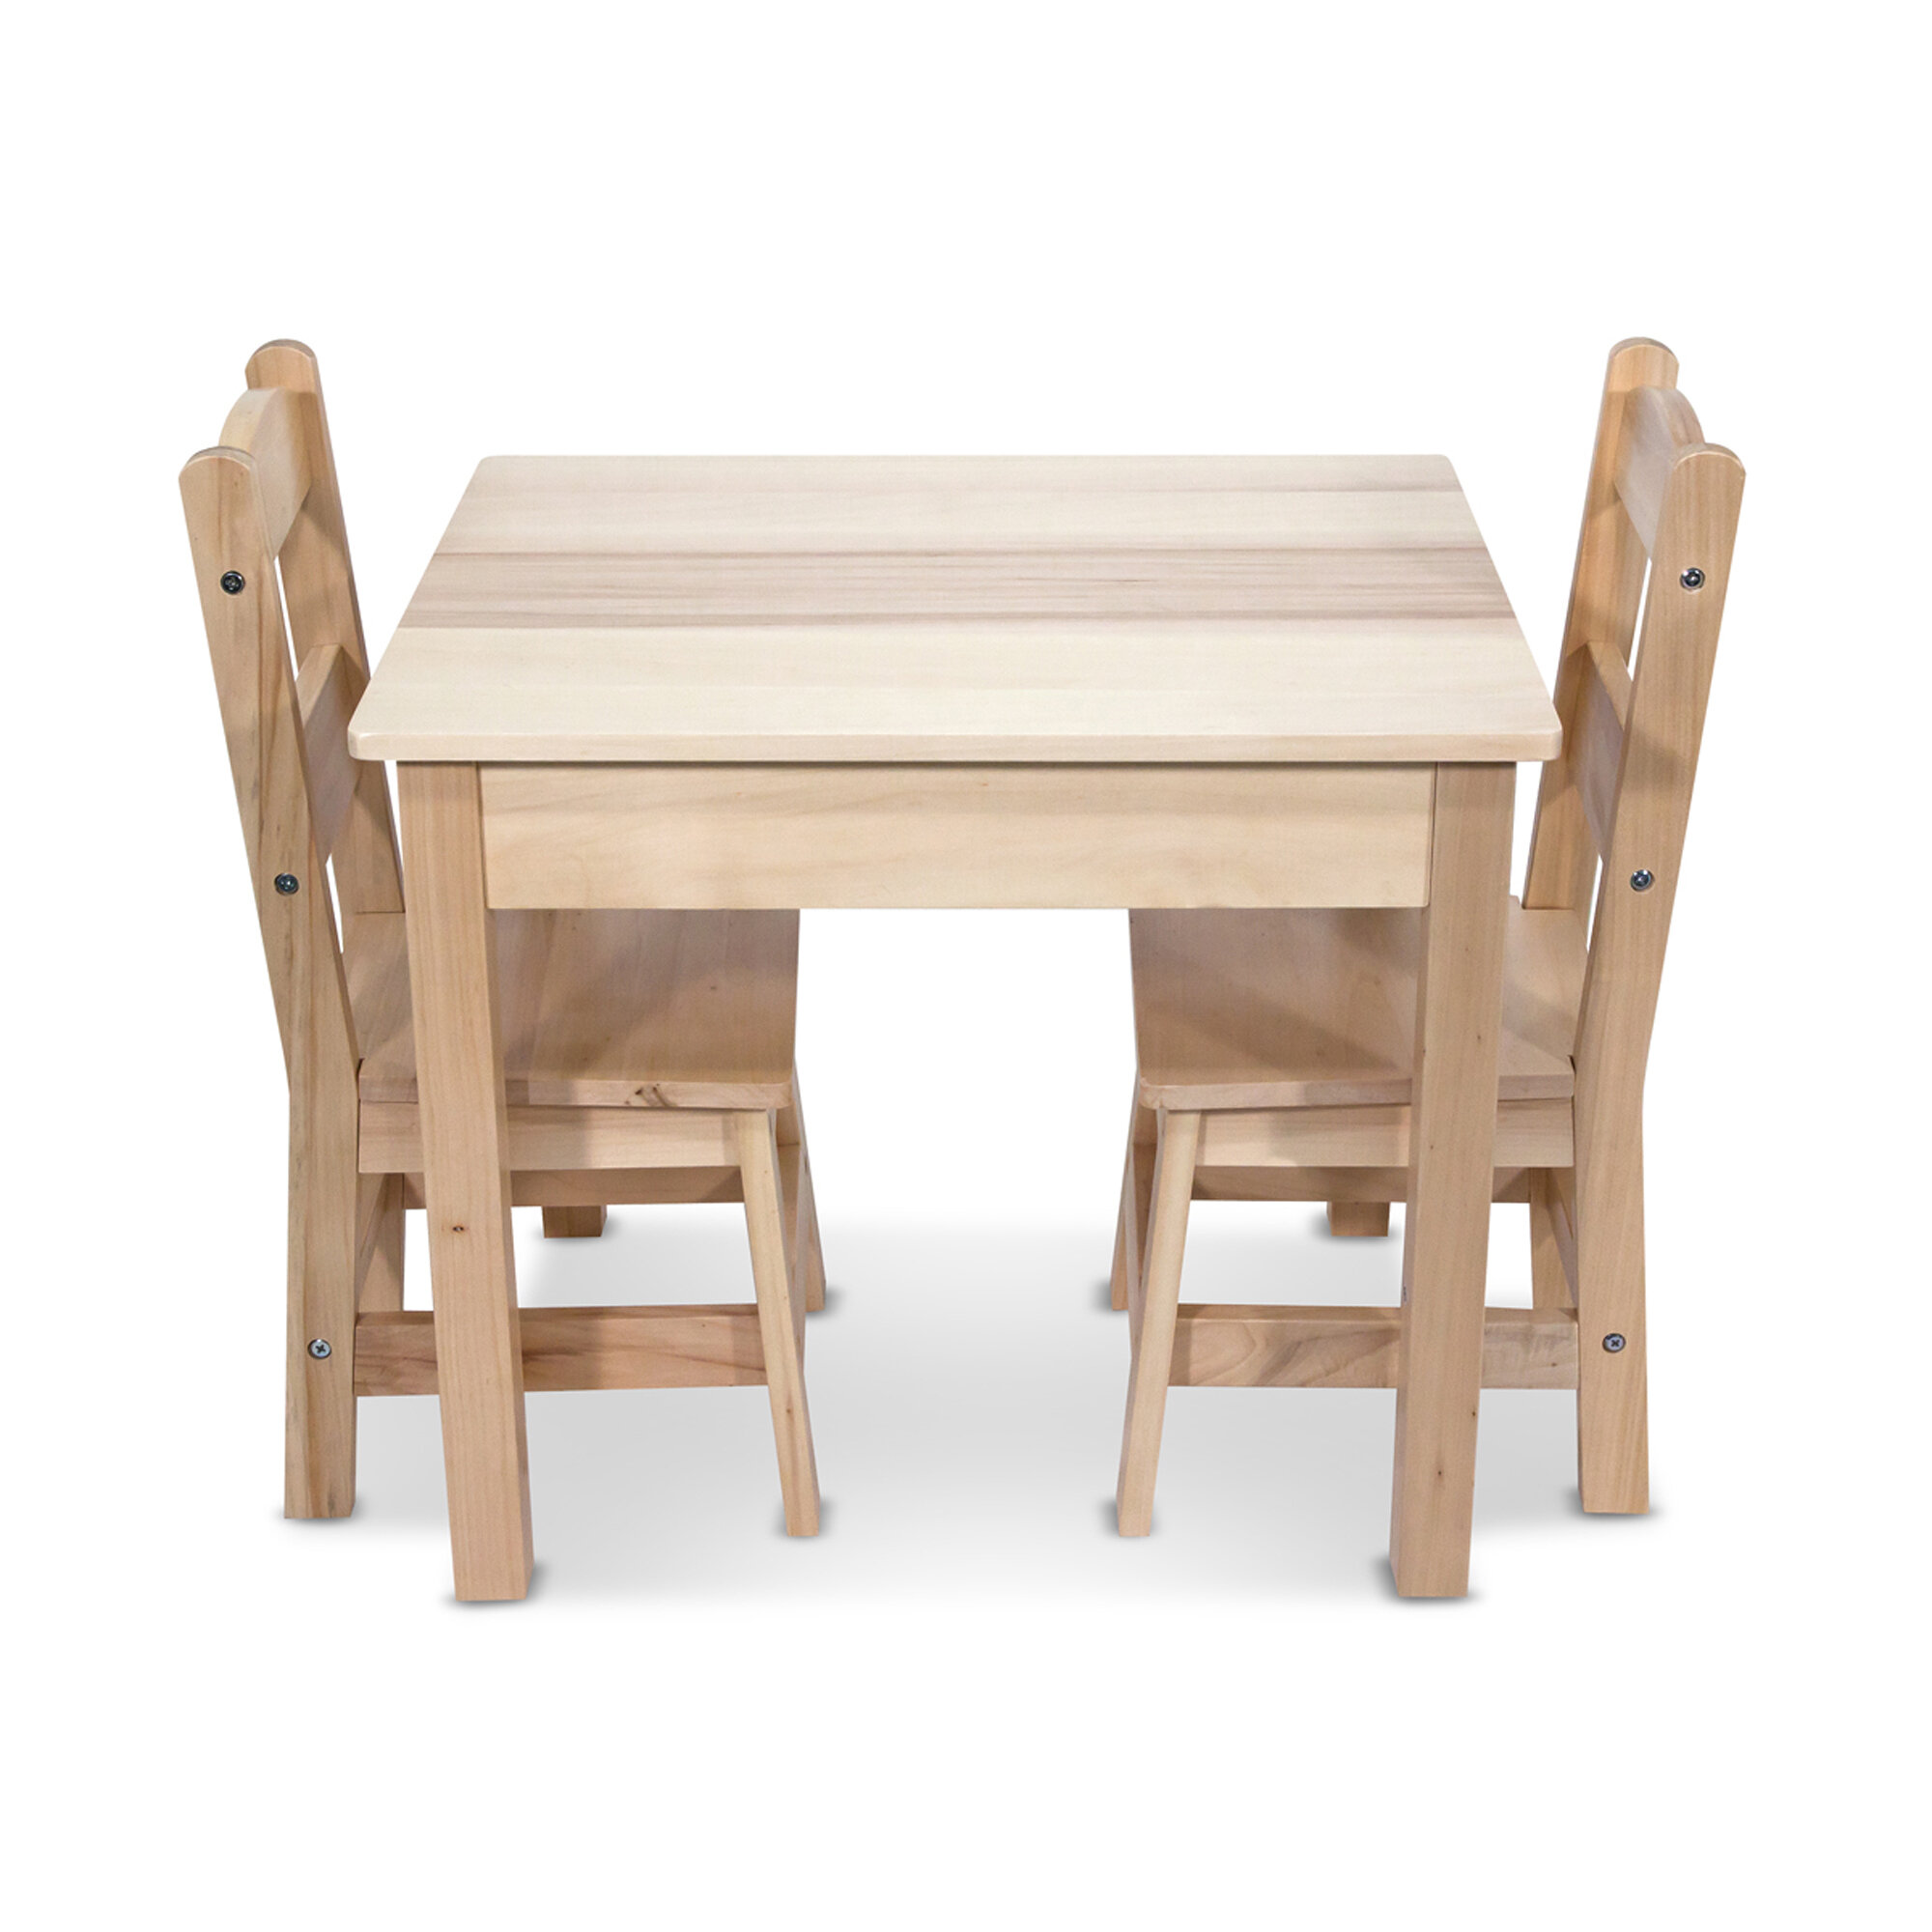 melissa and doug craft table